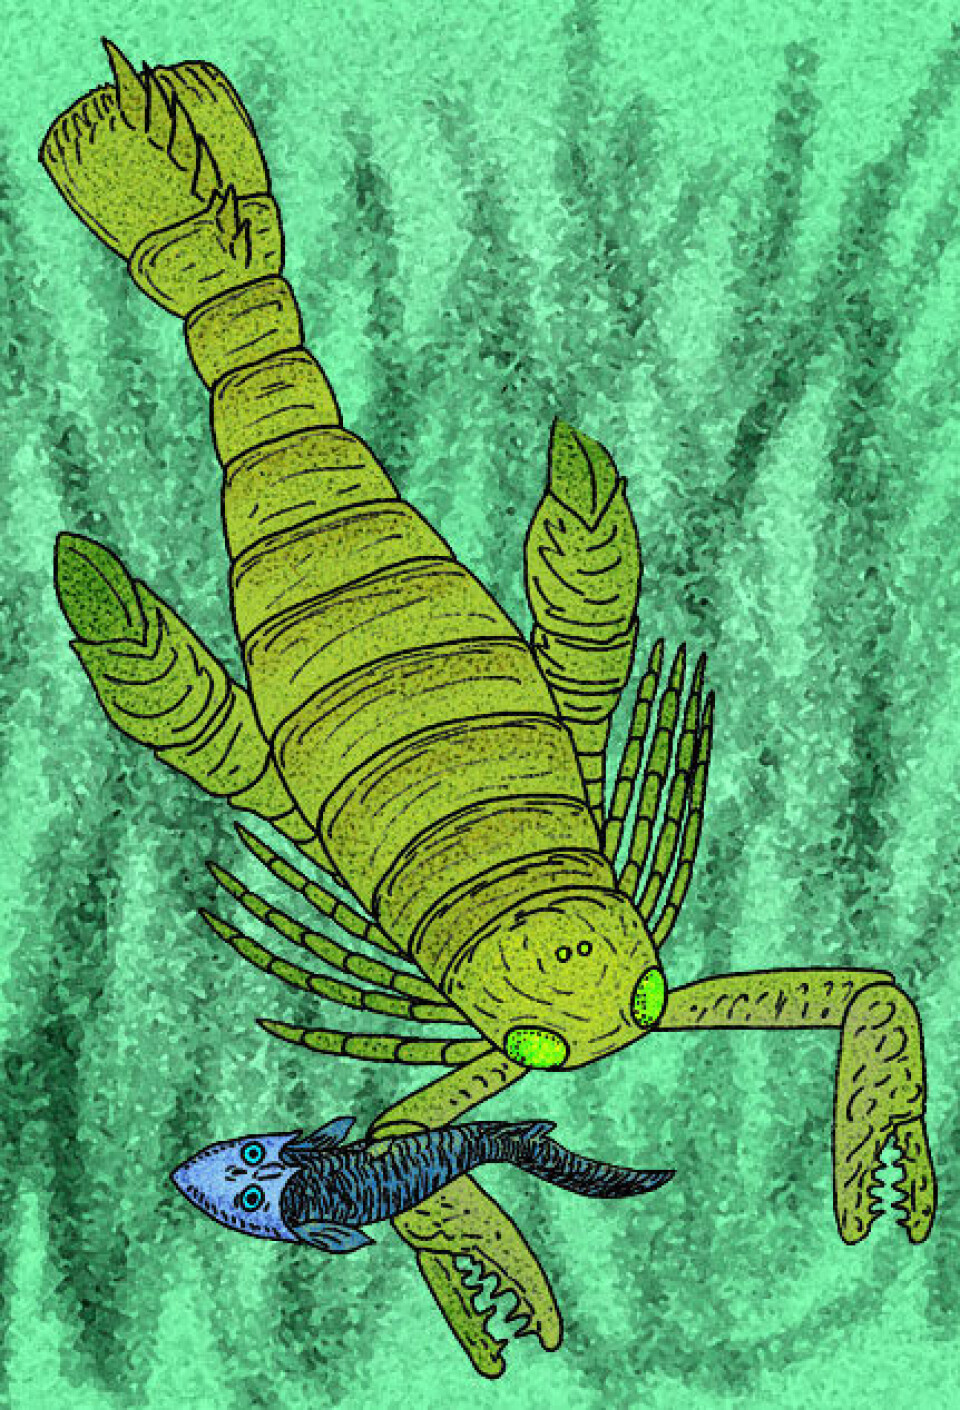 En kunstners ide av en sjøskorpion på jakt (slekten Acutiramus). (Illustrasjon: Stanton F. Fink/Wikipedia Commons)